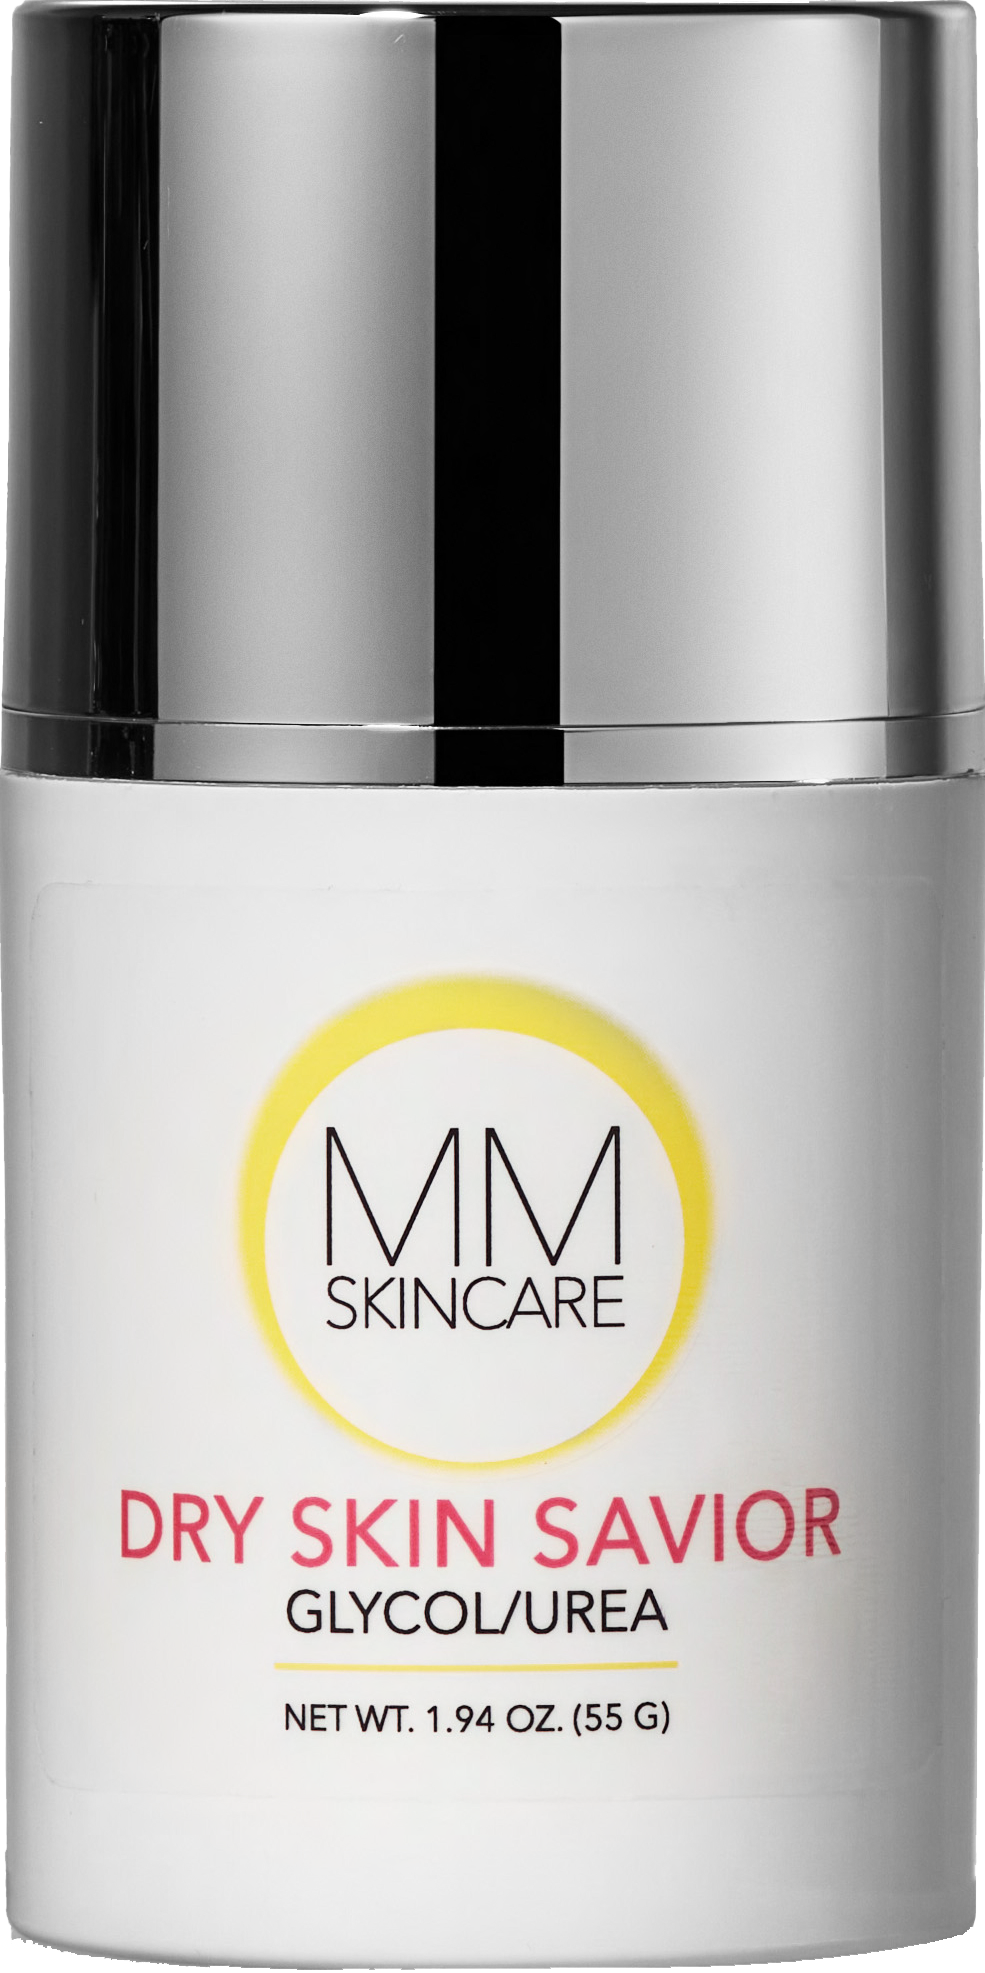 Dry Skin Savior Glycol & Urea Cream - MMSkincare